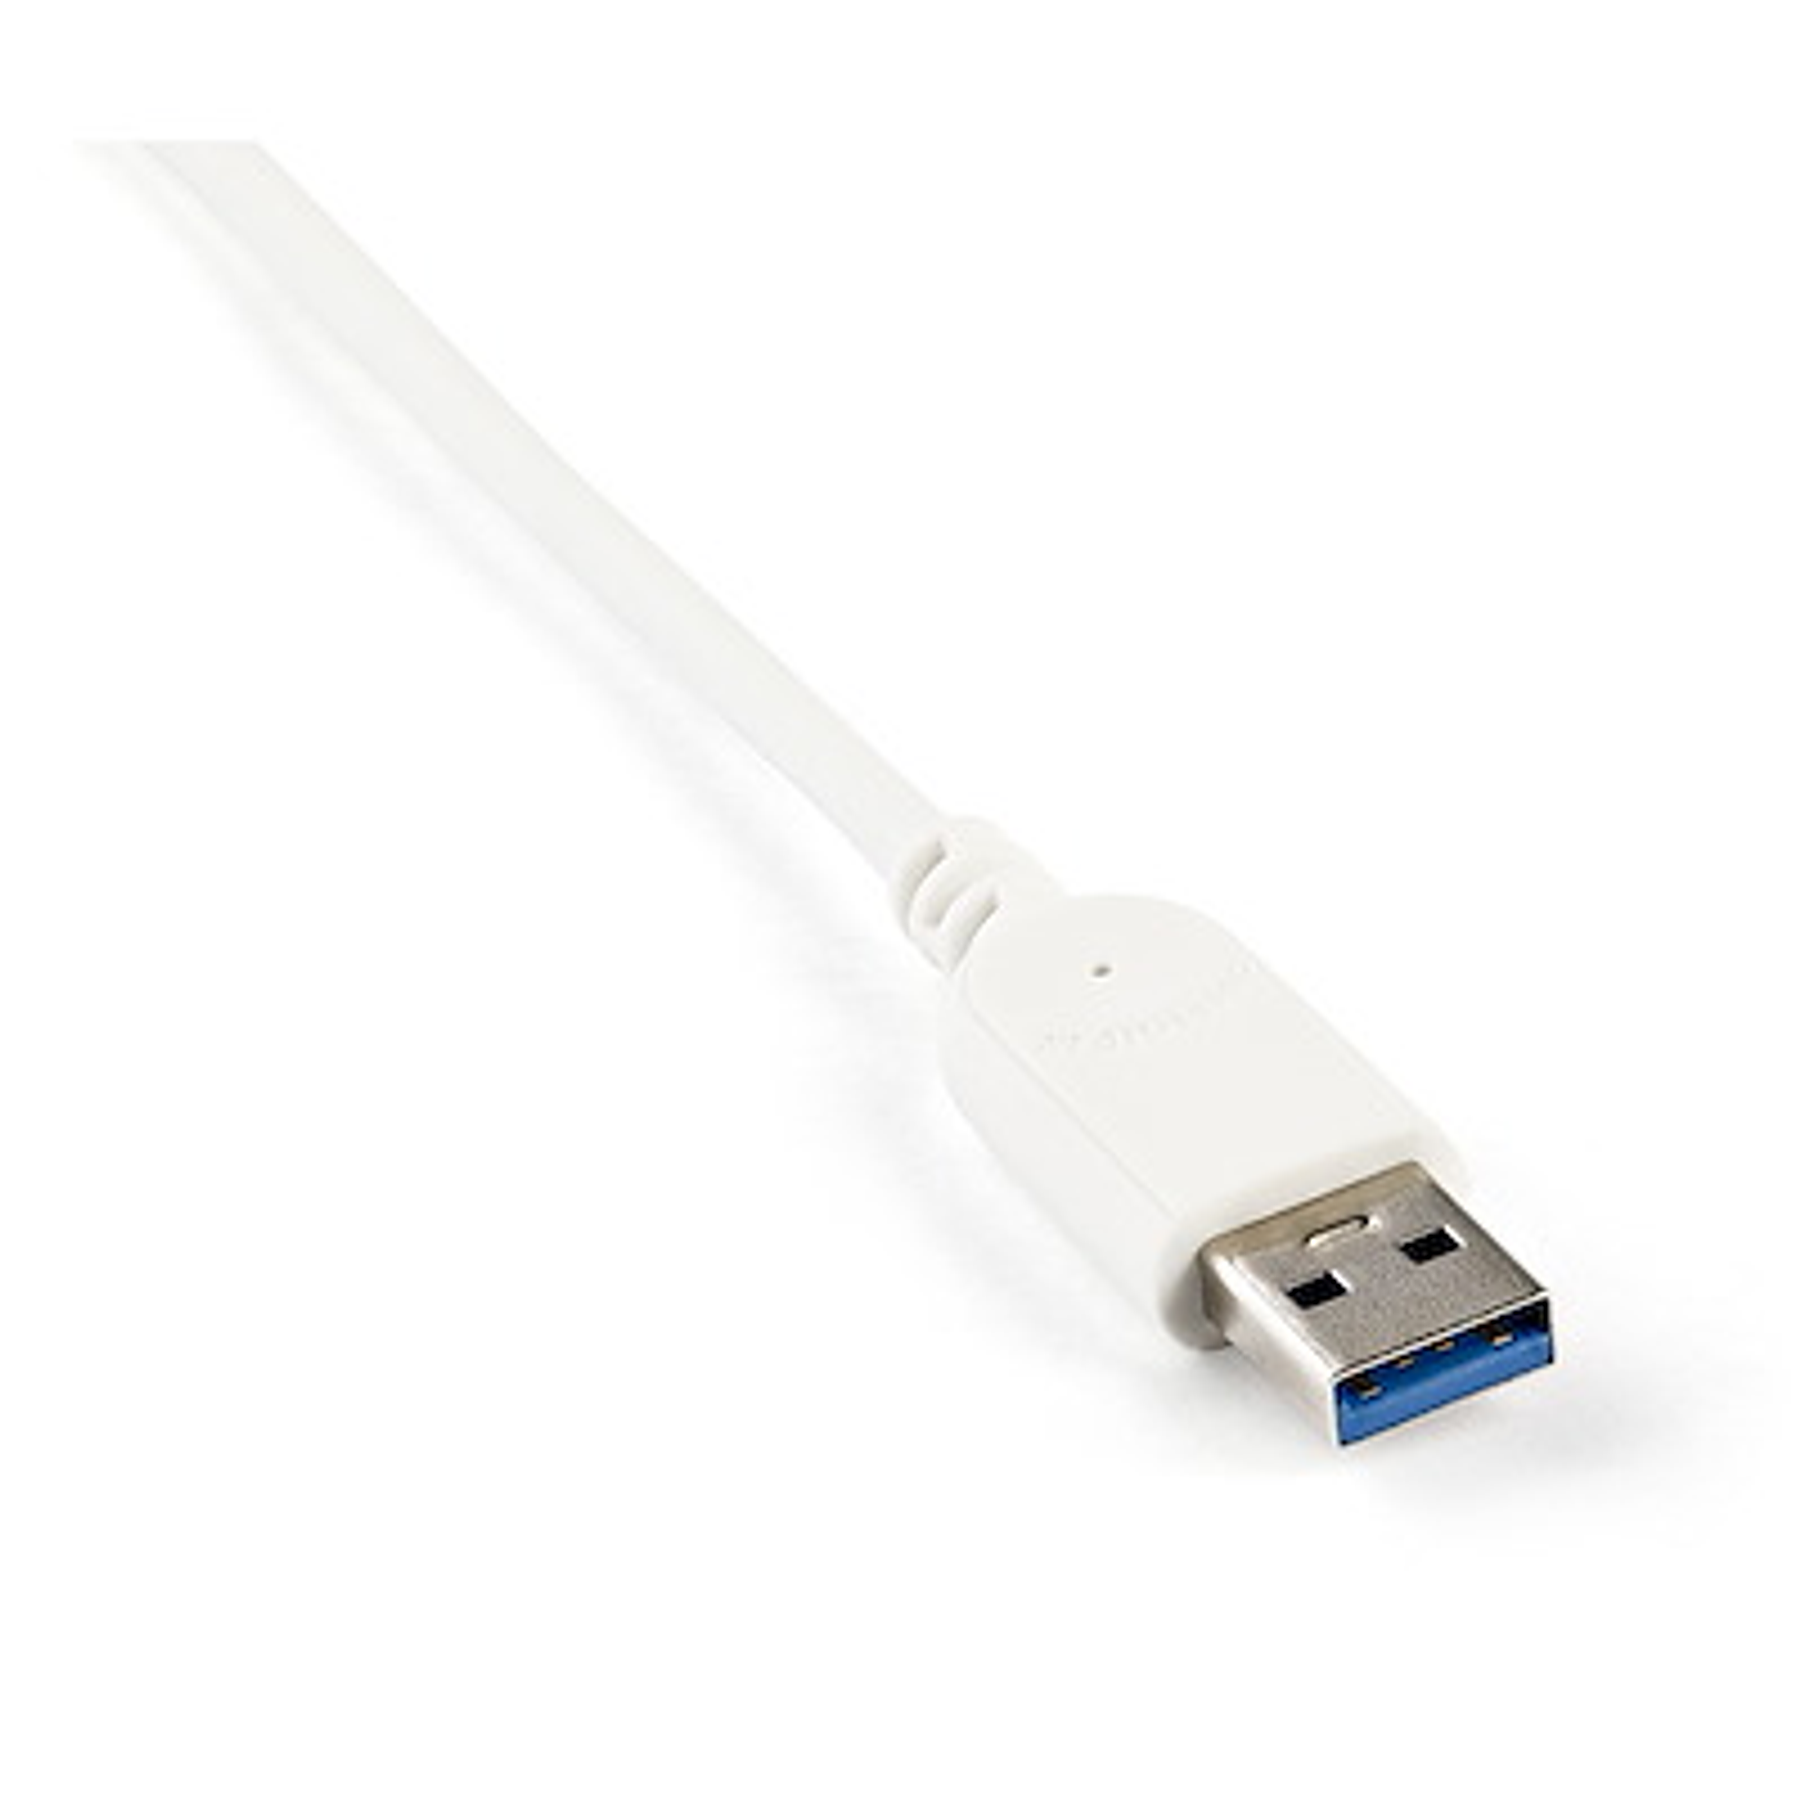 StarTech Hub Concentrador de 3 Puertos USB 3.0 con Adaptador de Red Ethernet Gigabit Conectividad Rápida y Eficiente